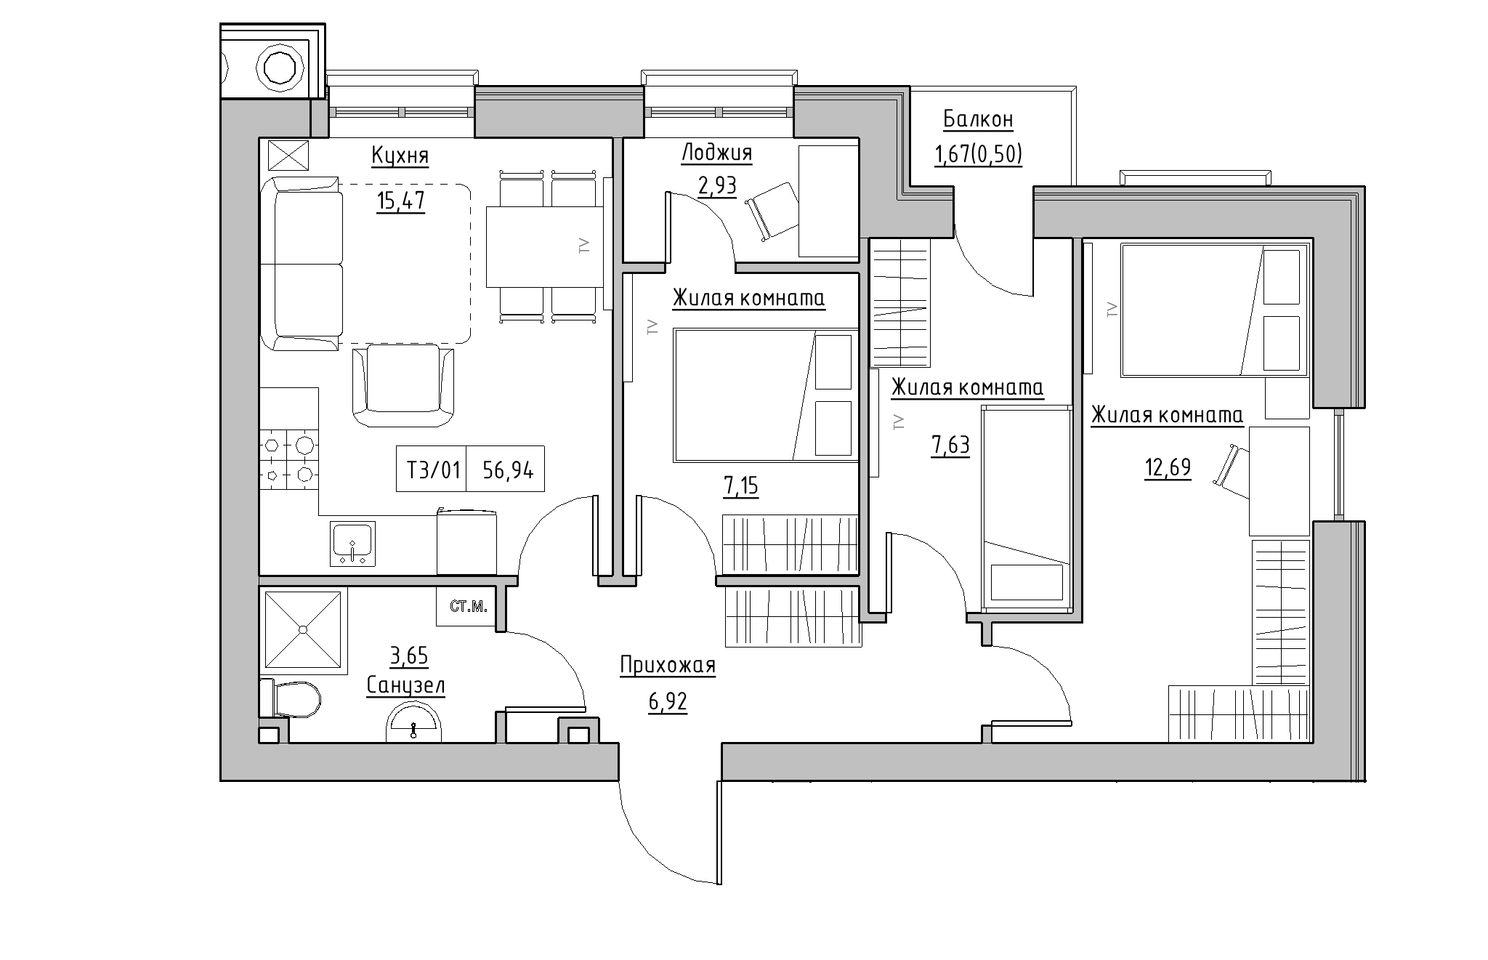 Планировка 3-к квартира площей 56.94м2, KS-010-03/0008.